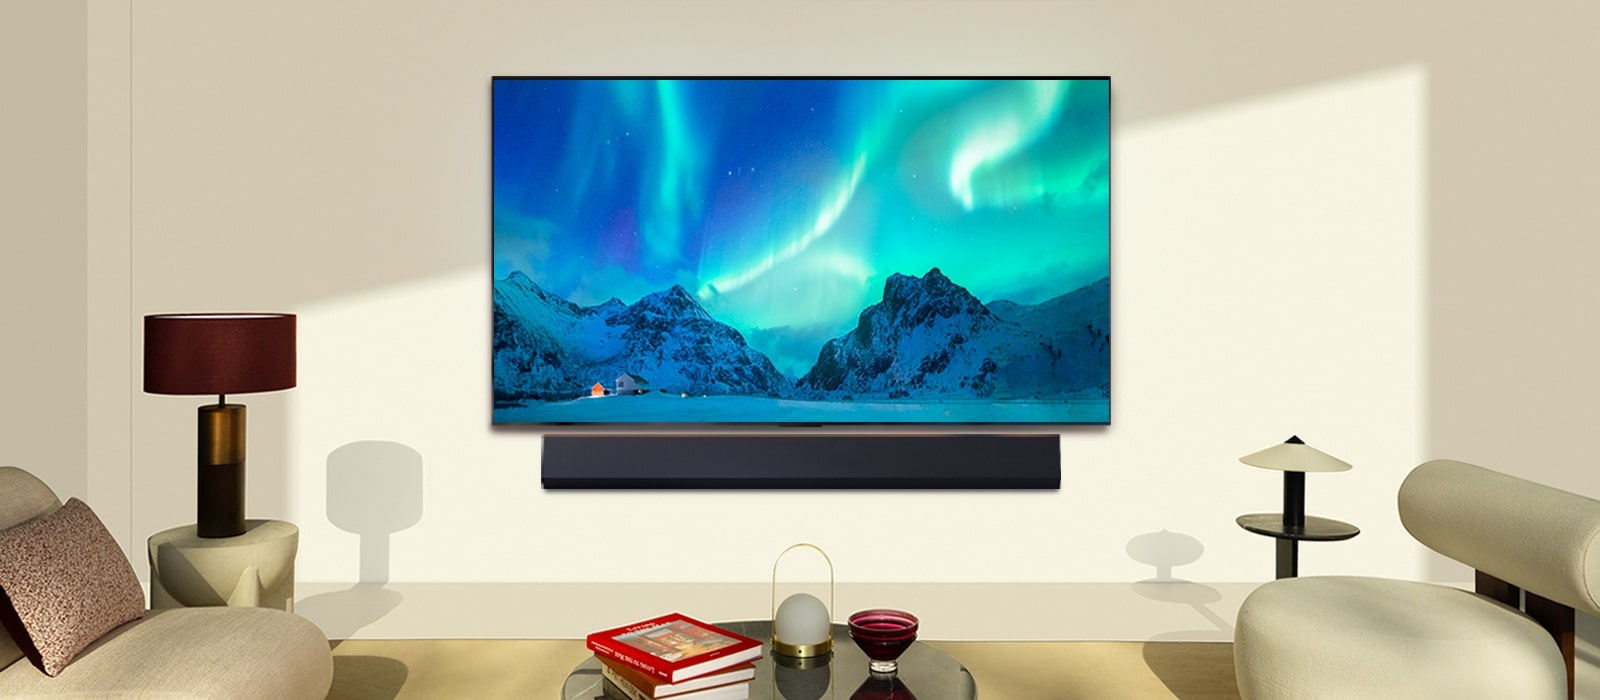 LG OLED TV và LG Soundbar trong không gian sống hiện đại vào ban ngày. Hình ảnh màn hình cực quang được hiển thị với mức độ sáng lý tưởng.